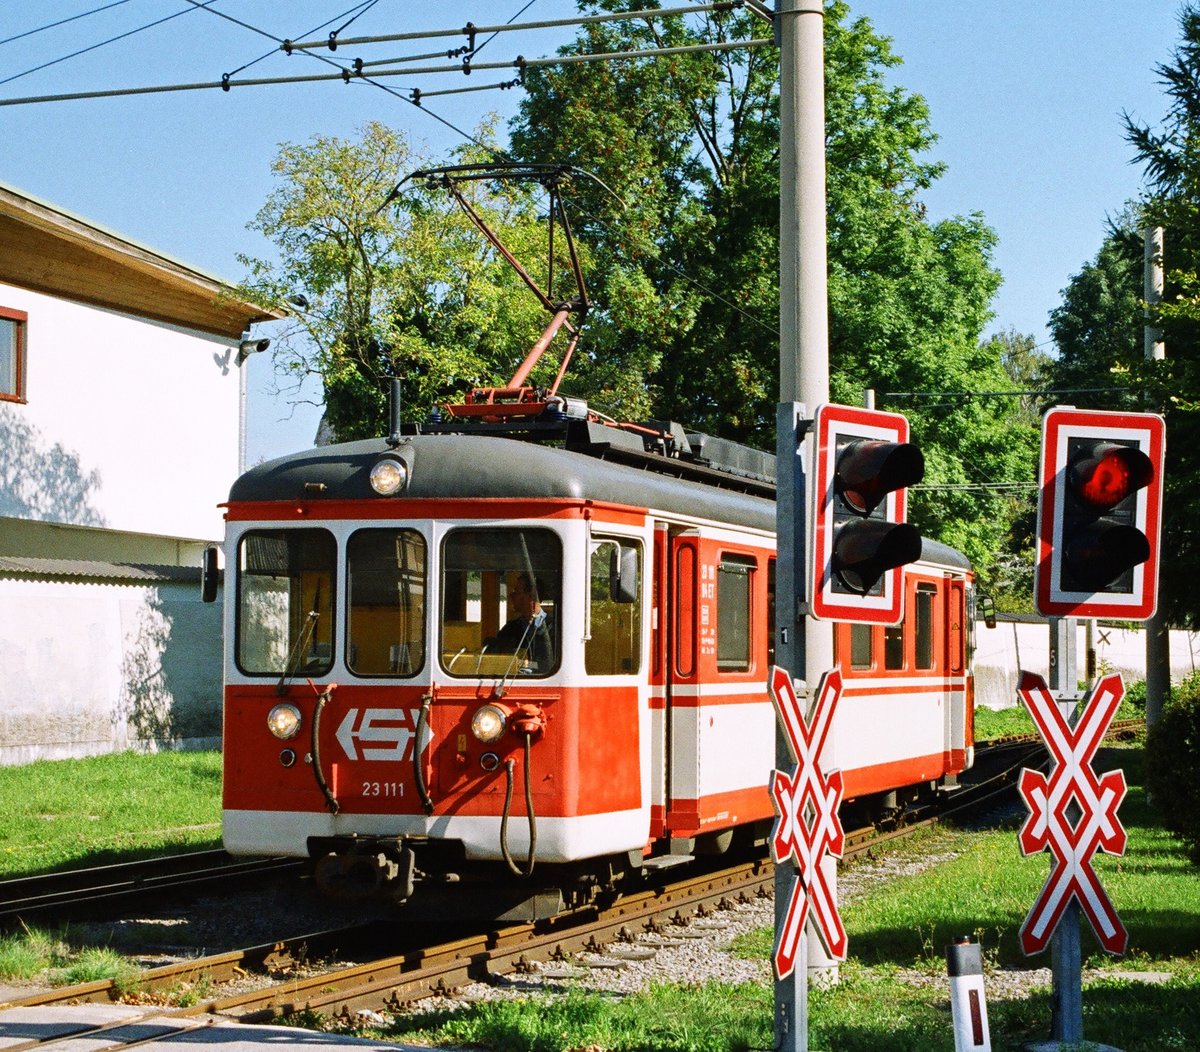 20.09.2003, Schön bunt sieht's aus am Seebahnhof Traunsee, Tw S+H 23 111 fährt, von Vorchdorf kommend, ein.